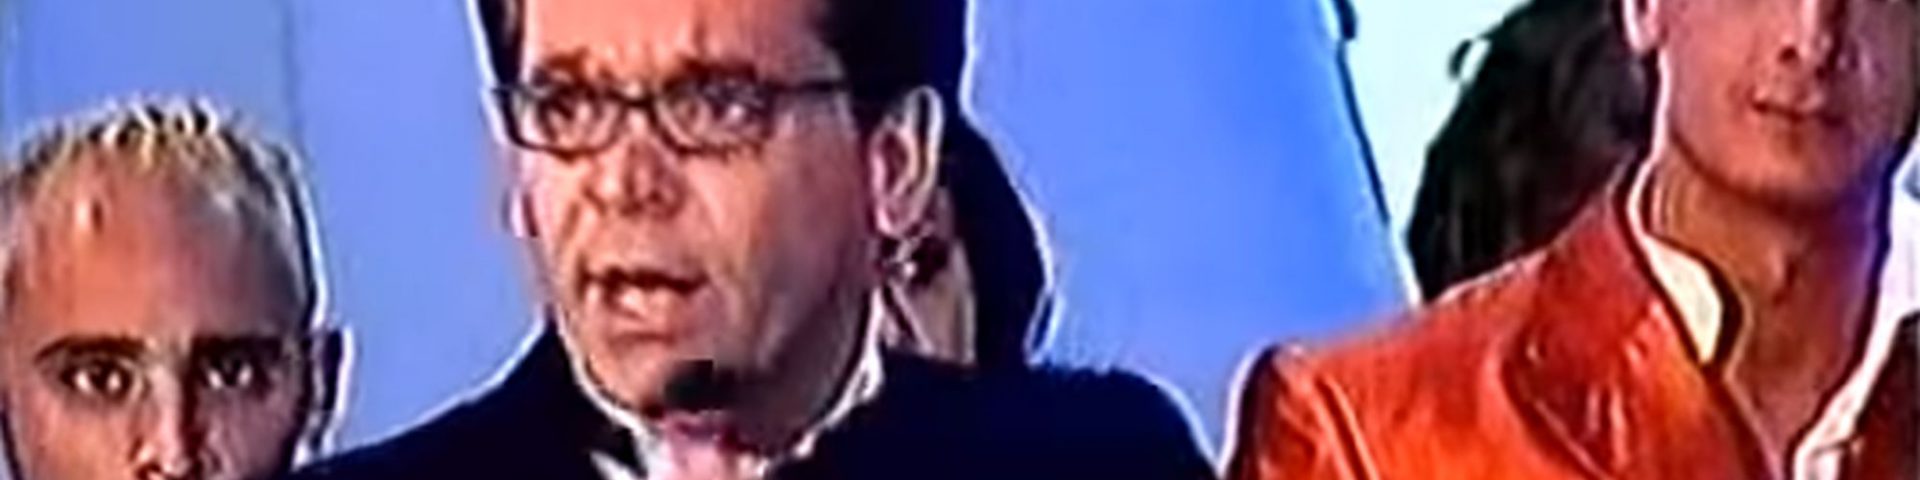 Alessandro Cecchi Paone al Grande Fratello Vip e la storica polemica ai Telegatti 2001 - Video